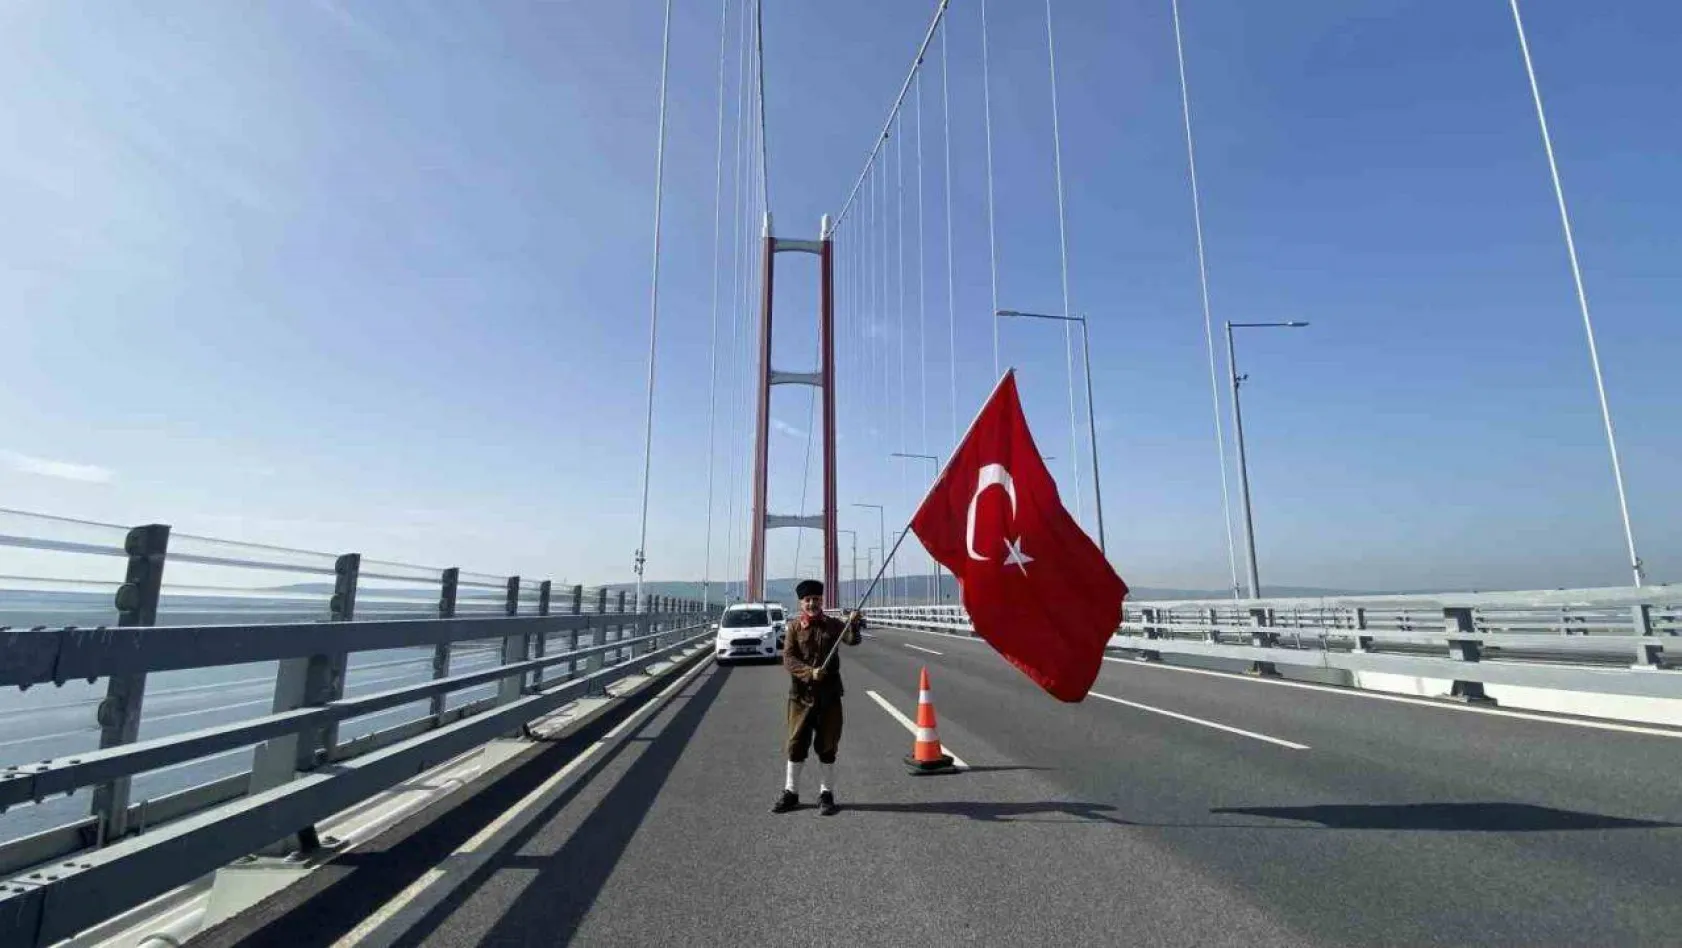 Şehitler için Çanakkale'ye yürüyen gazi torunu, Türk bayrağıyla 1915 Çanakkale Köprüsü'nü yürüyerek geçti